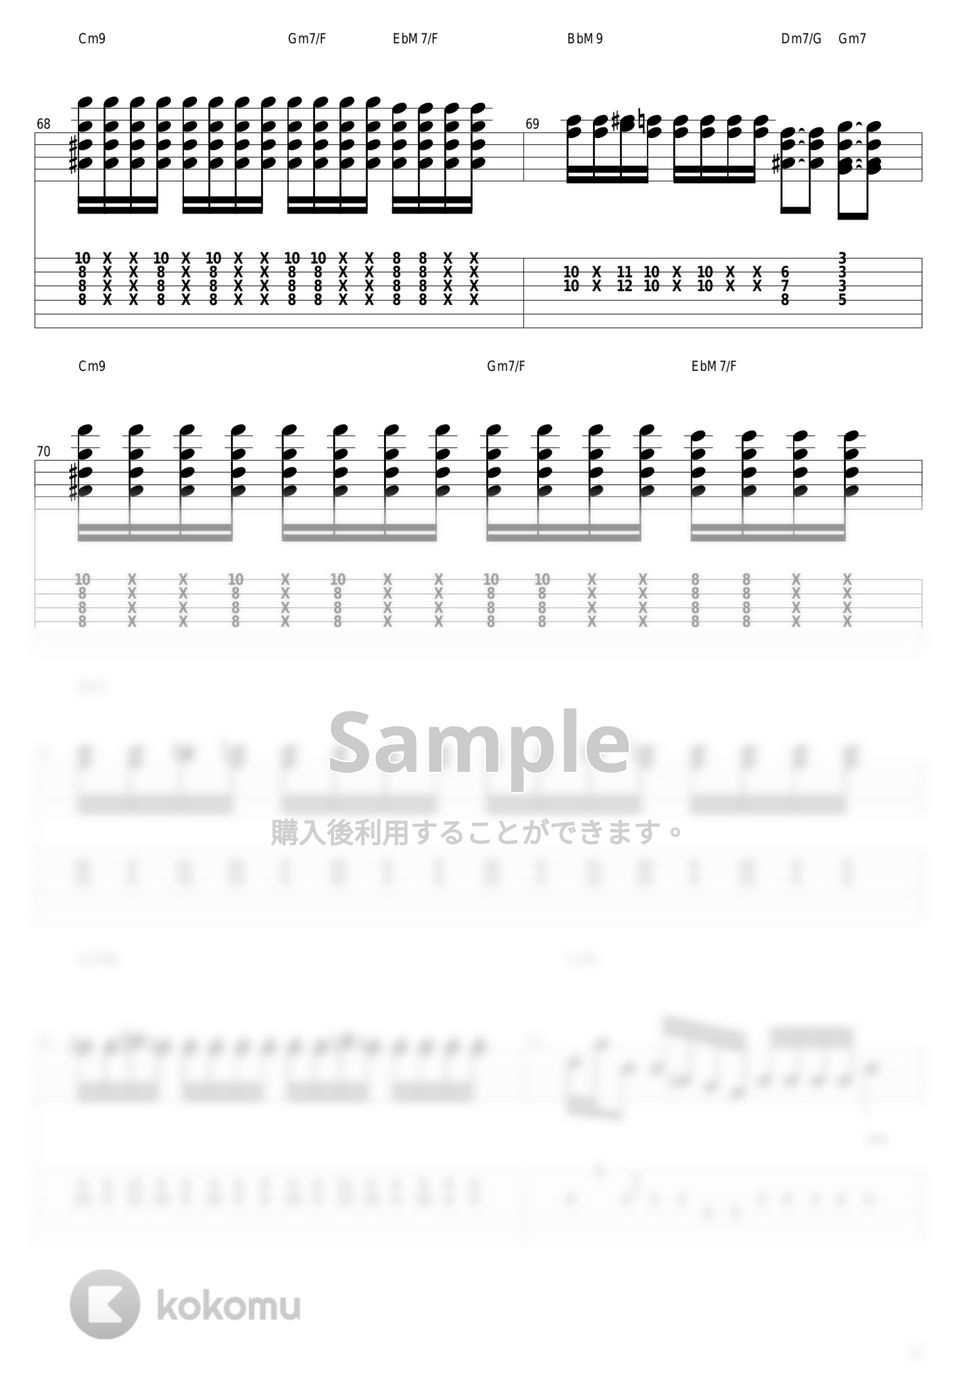 山下達郎 - Music Book by guitar cover with tab